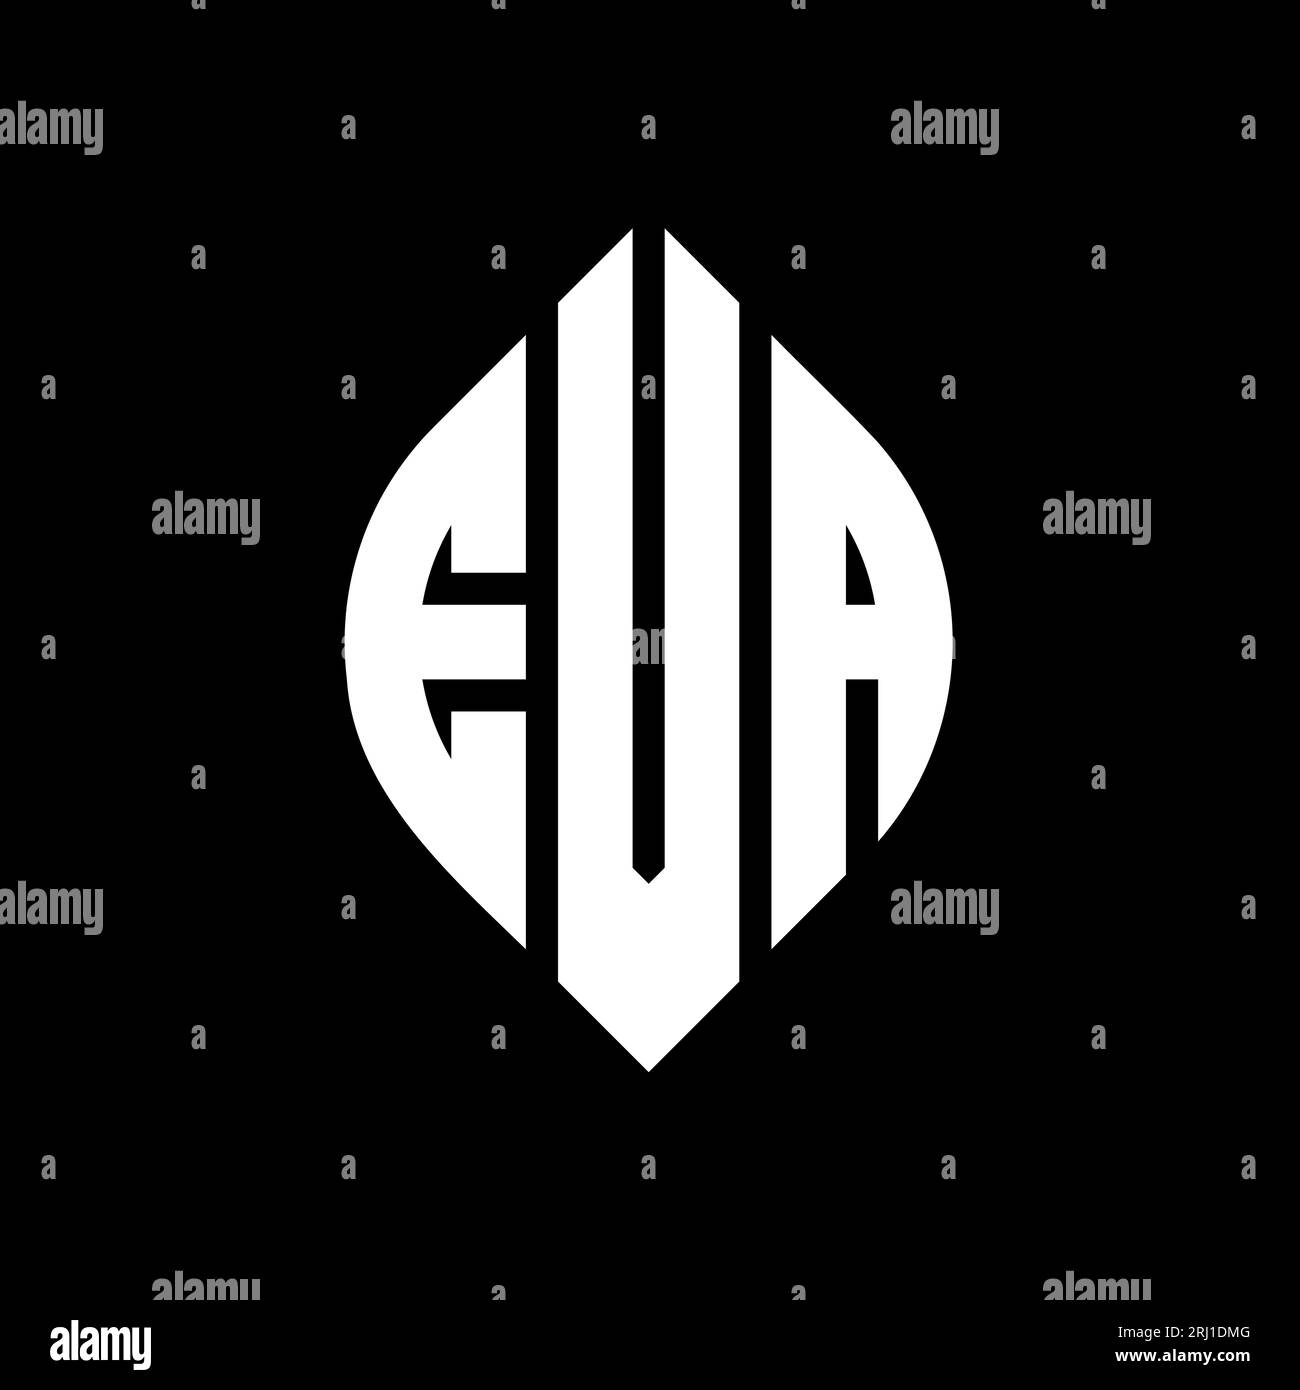 Conception de logo de lettre cercle EVA avec forme de cercle et d'ellipse. Lettres elliptiques EVA avec style typographique. Les trois initiales forment un logo circulaire. EVA ci Illustration de Vecteur